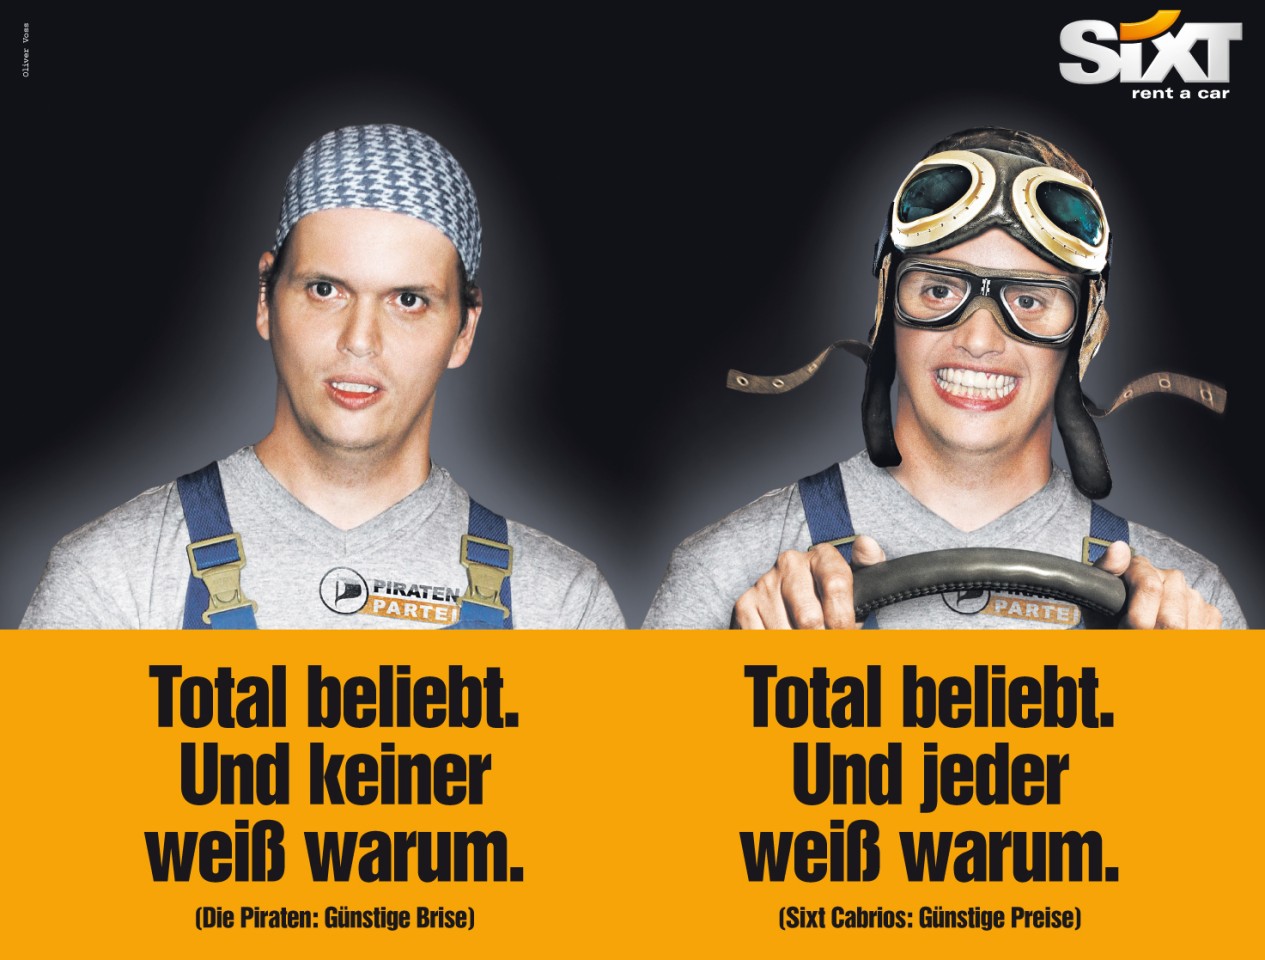 Die Anzeige von Sixt zeigt den Berliner Piraten-Abgeordneten Gerwald Claus-Brunner. Der ist darüber nicht begeistert.